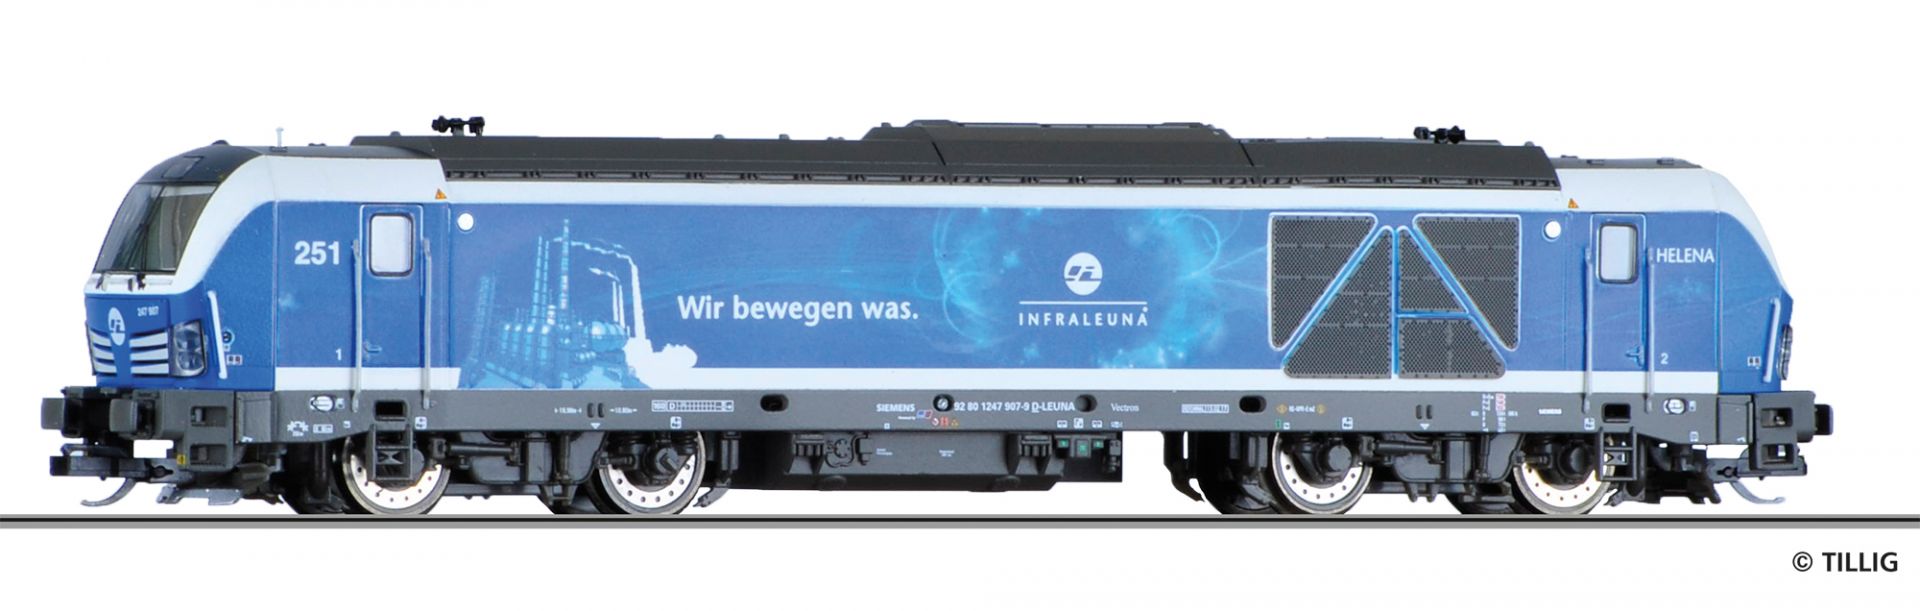 04850 | Diesellokomotive Infra Leuna GmbH -werksseitig ausverkauft-